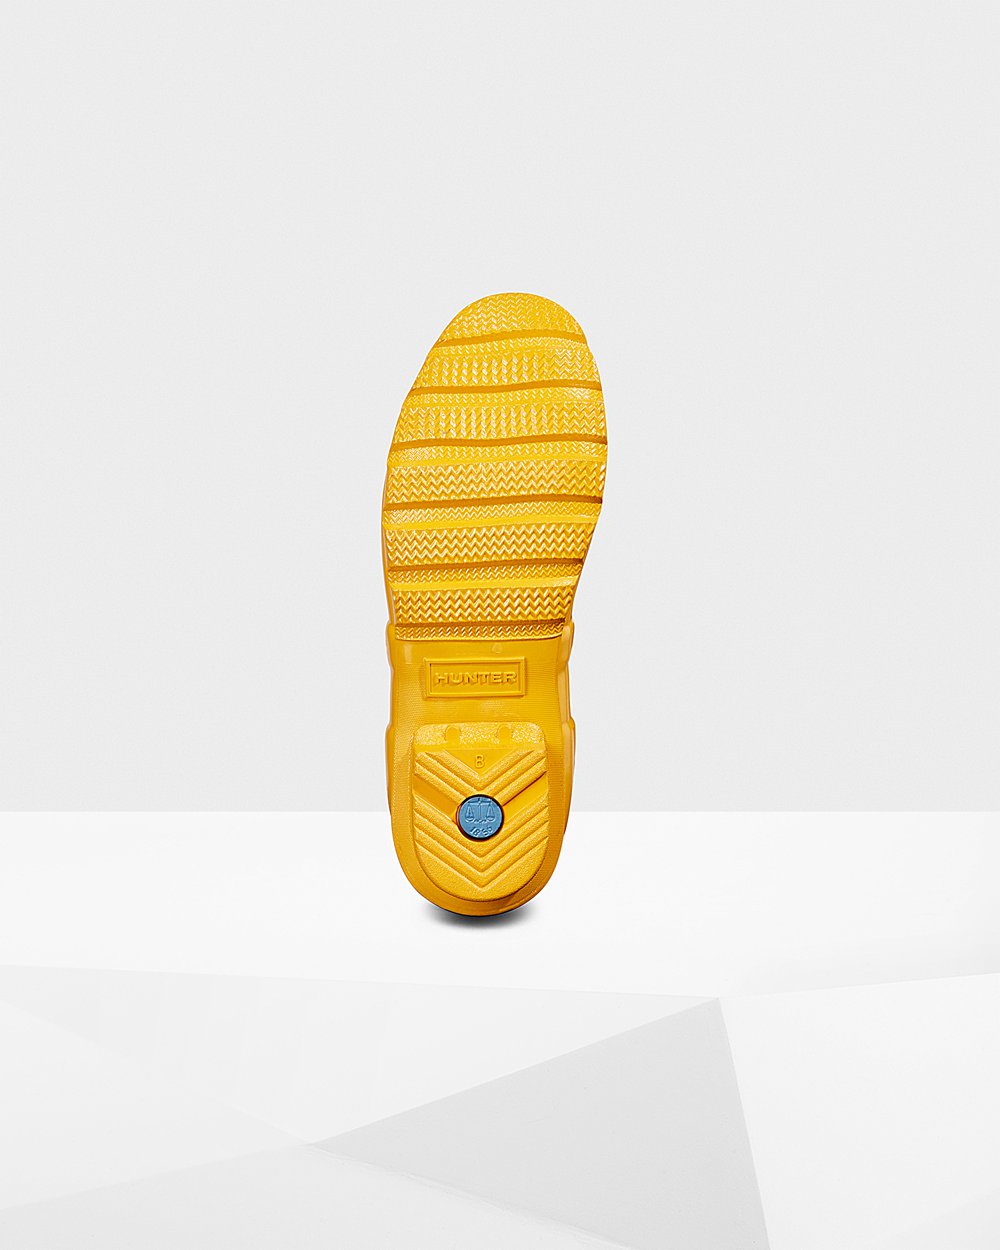 Womens Short Rain Boots - Hunter Original Gloss (48IHSGFVE) - Yellow